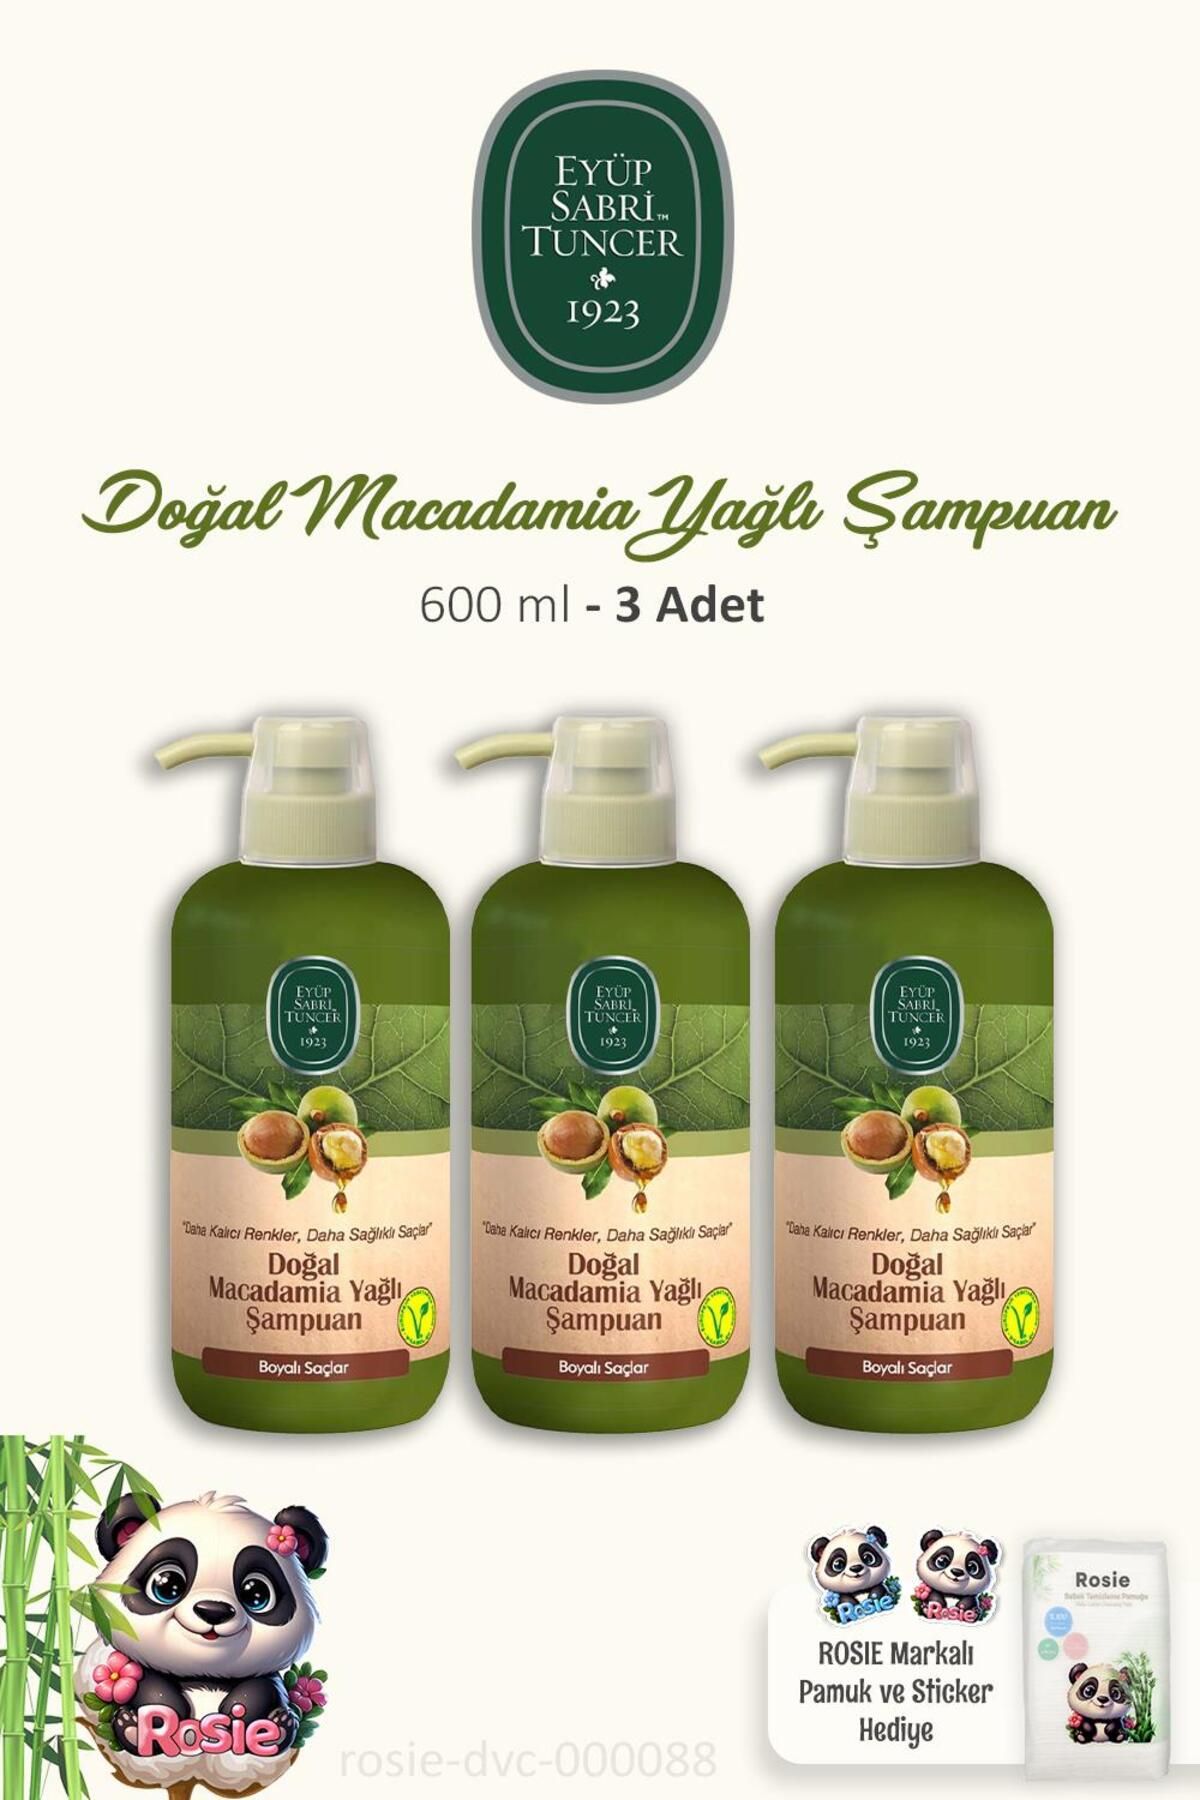 Eyüp Sabri Tuncer 3 Adet Doğal Macadamia Yağlı Şampuan 600 ml ve ROSIE Pamuk